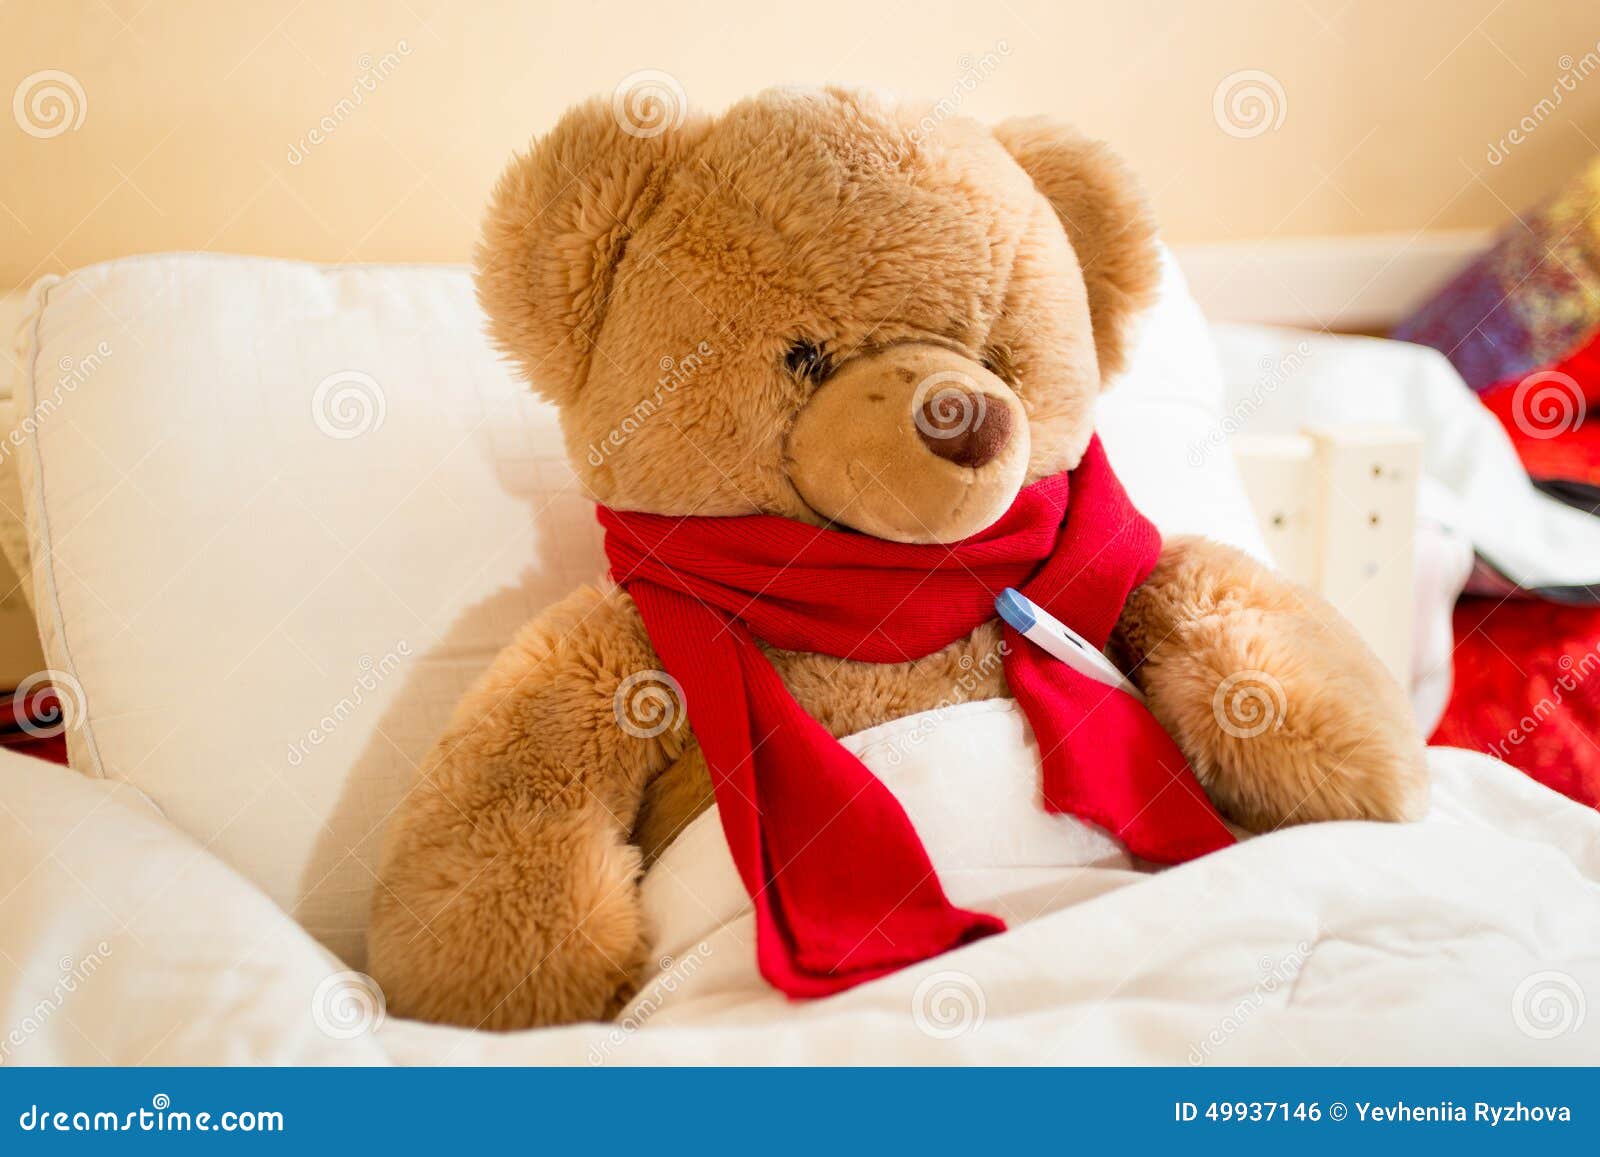 Медведь заболел. Медвежонок болеет. Медвежонок плюшевый с шарфом. Медведь болеет. Плюшевый мишка на кровати.